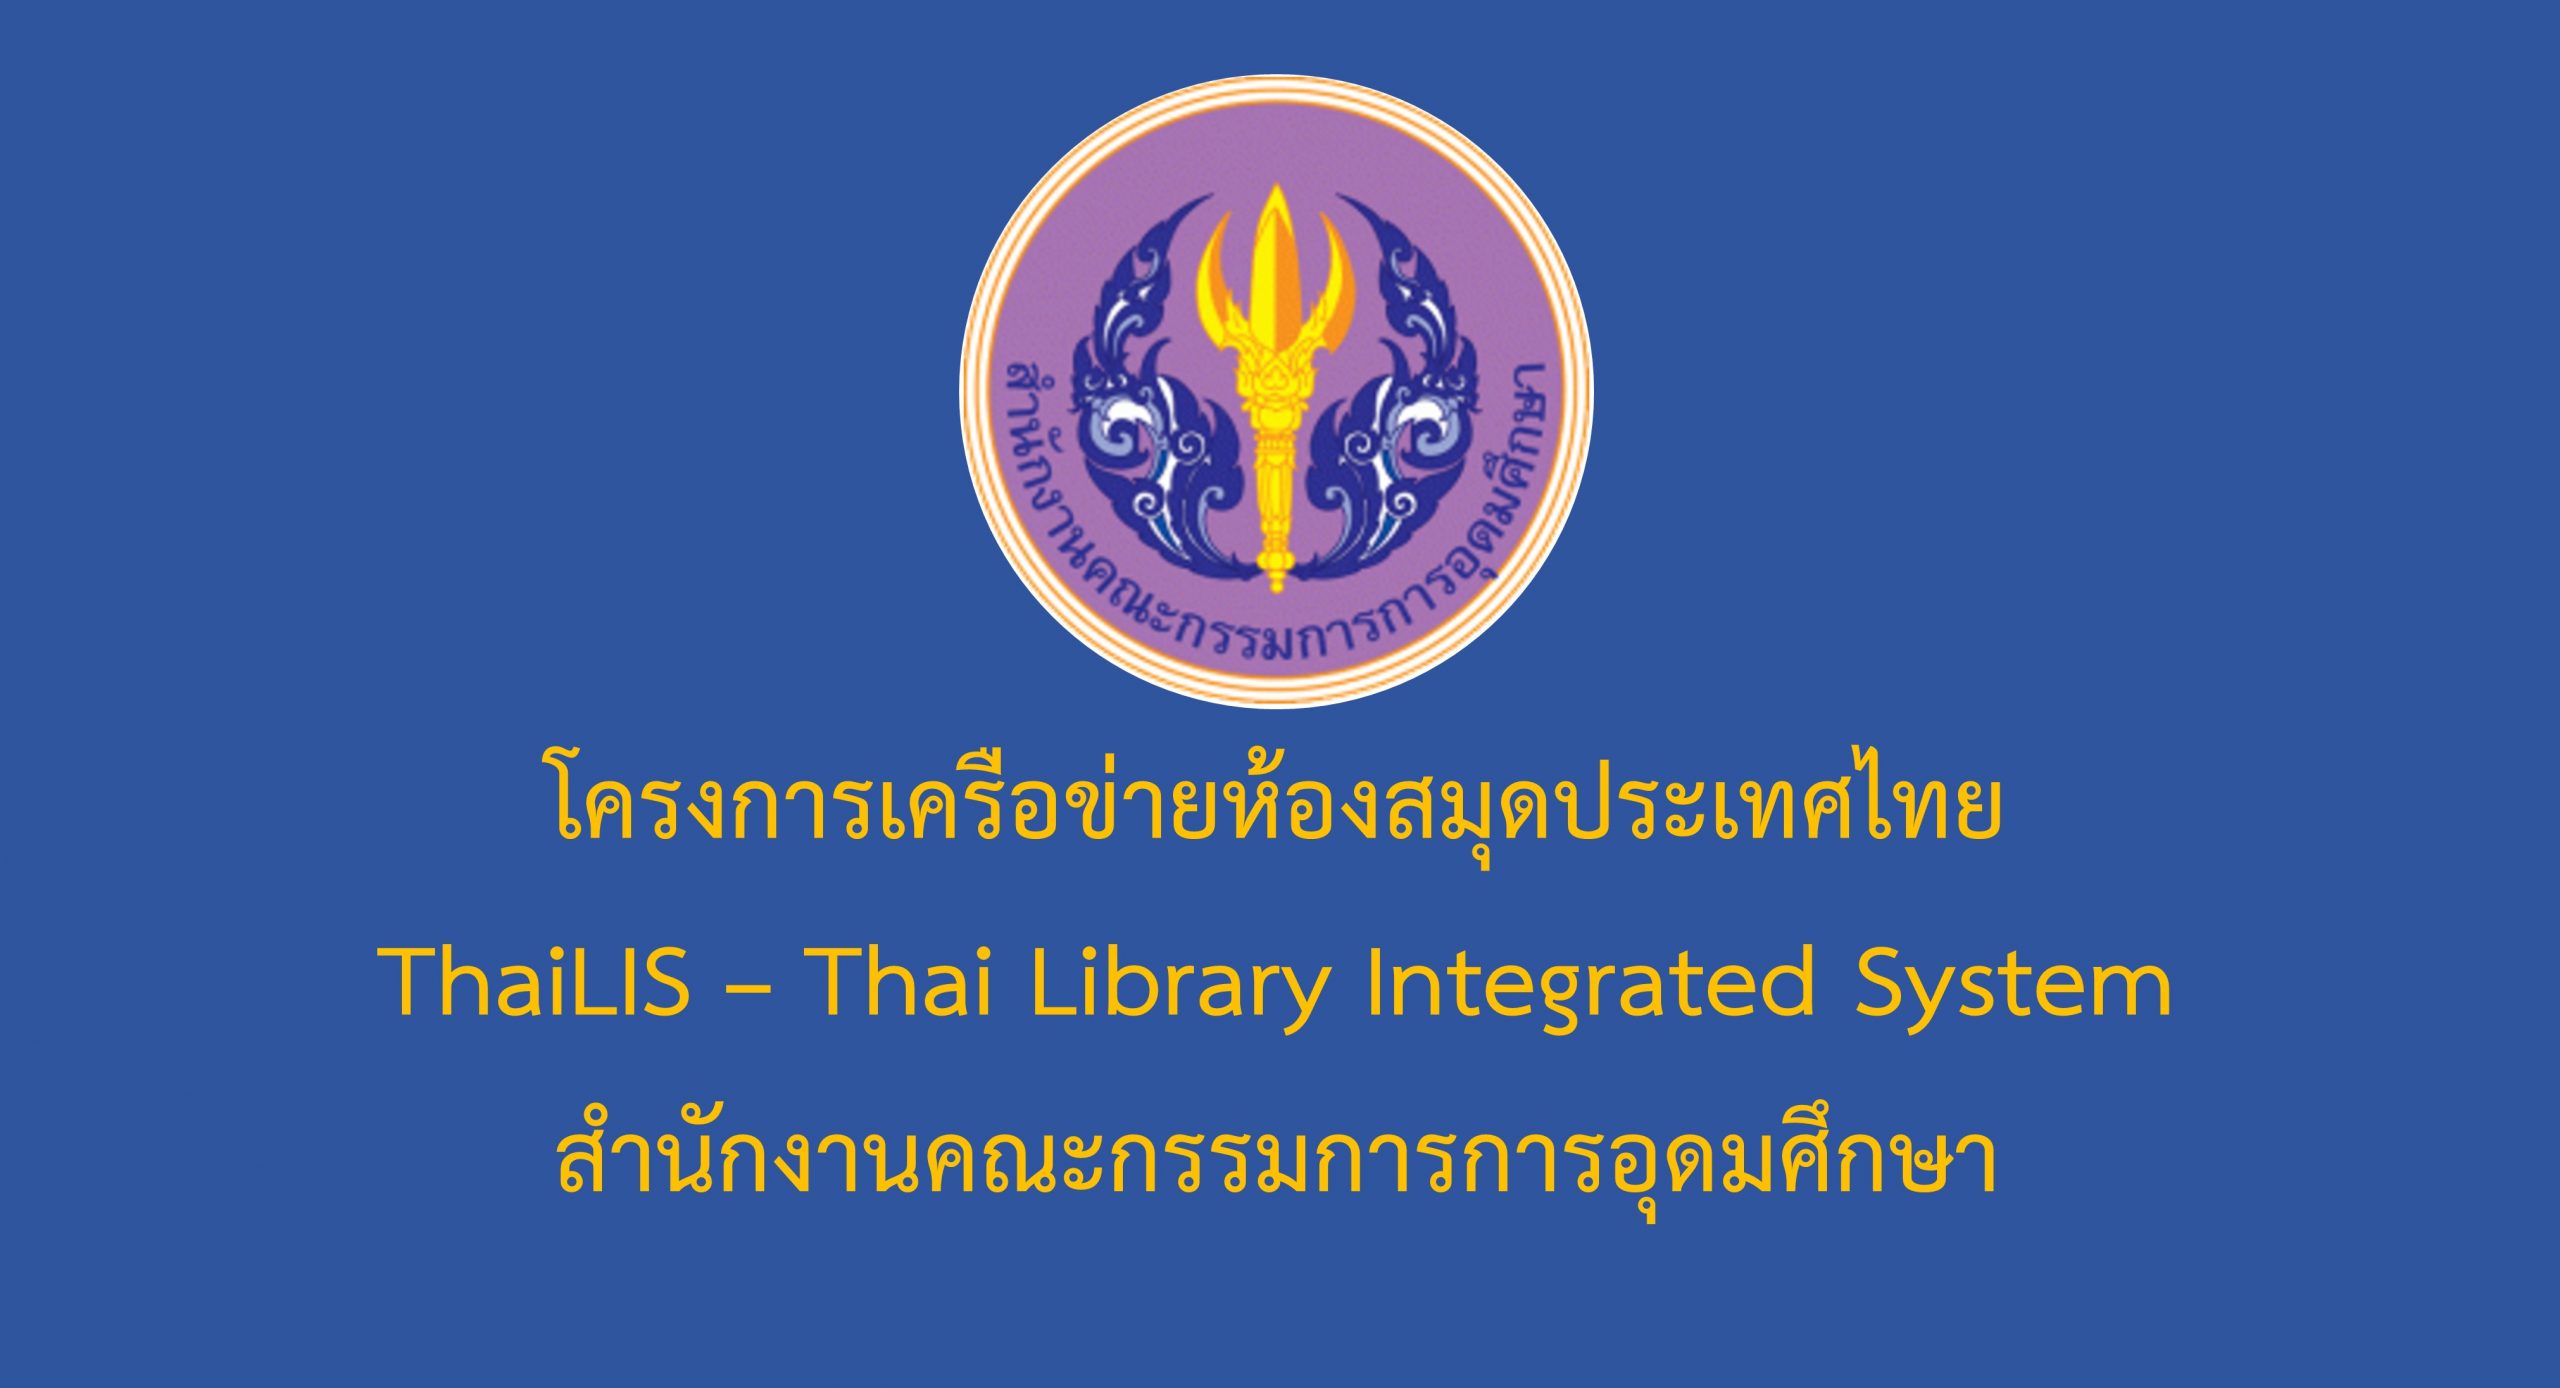 โครงการเครือข่ายห้องสมุดประเทศไทย ThaiLIS – Thai Library Integrated System สำนักงานคณะกรรมการการอุดมศึกษา